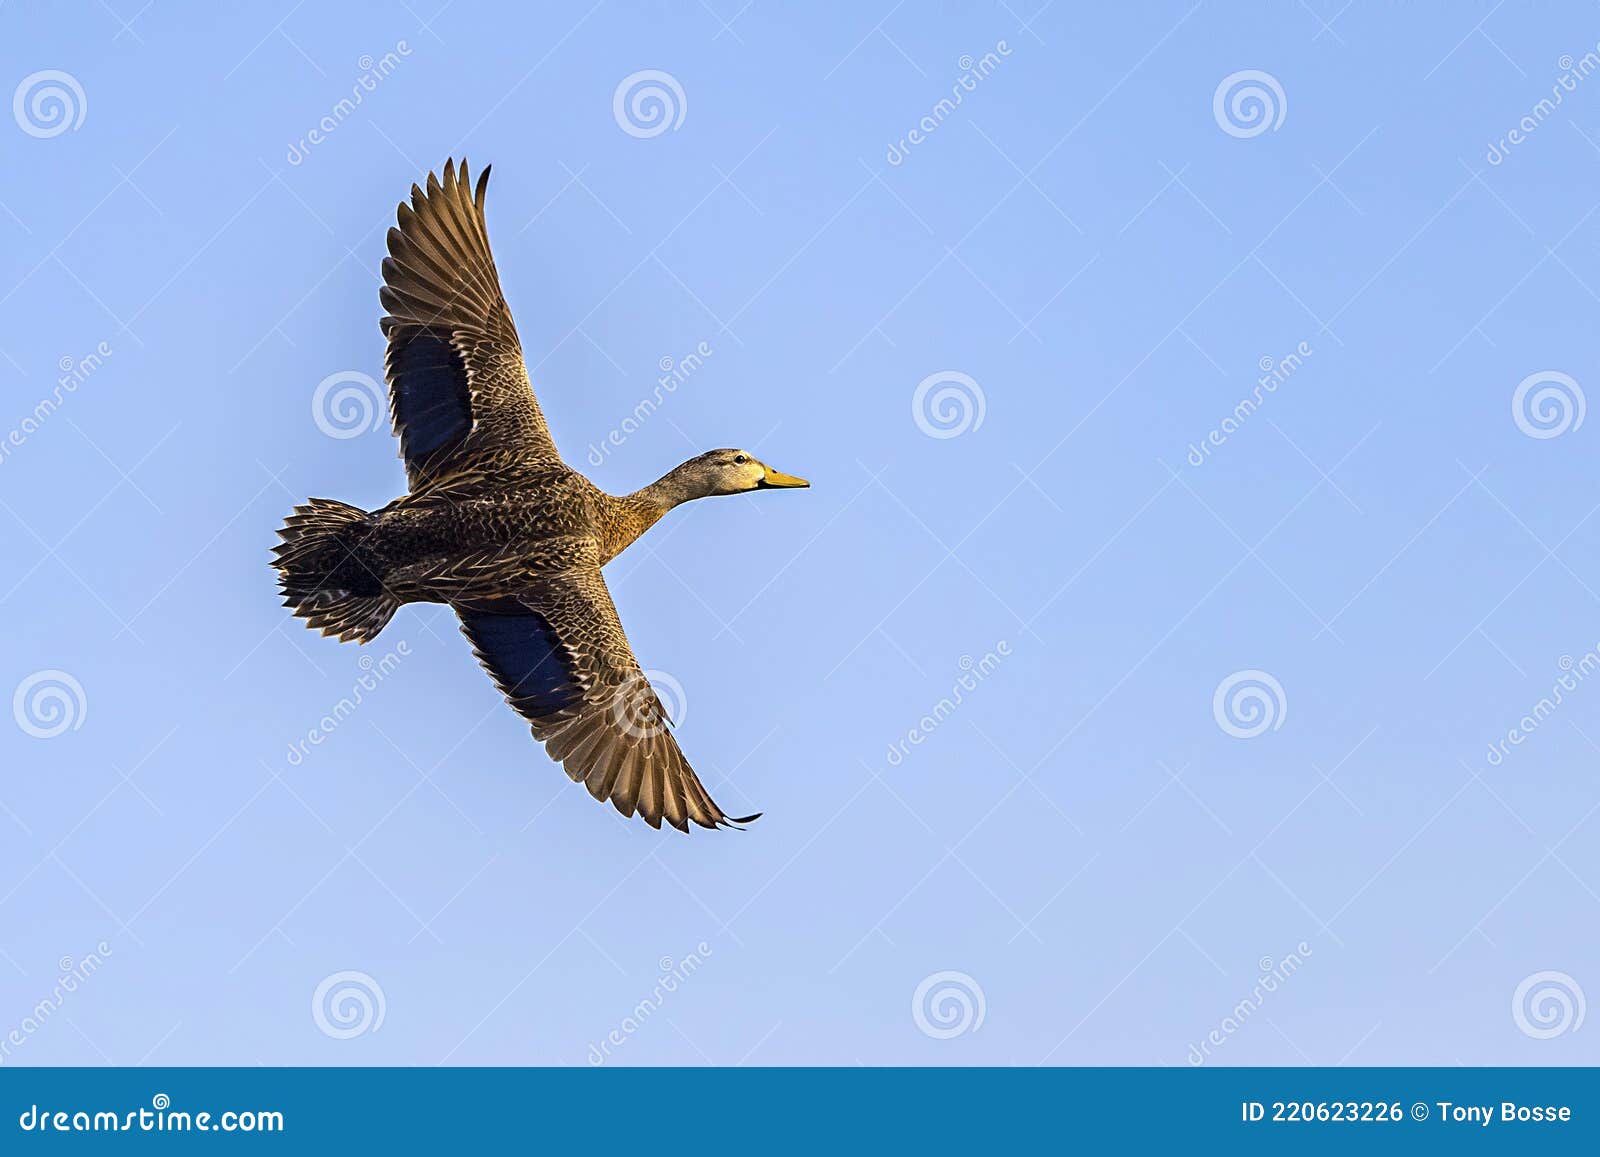 female mallard duck in flight, wingspan